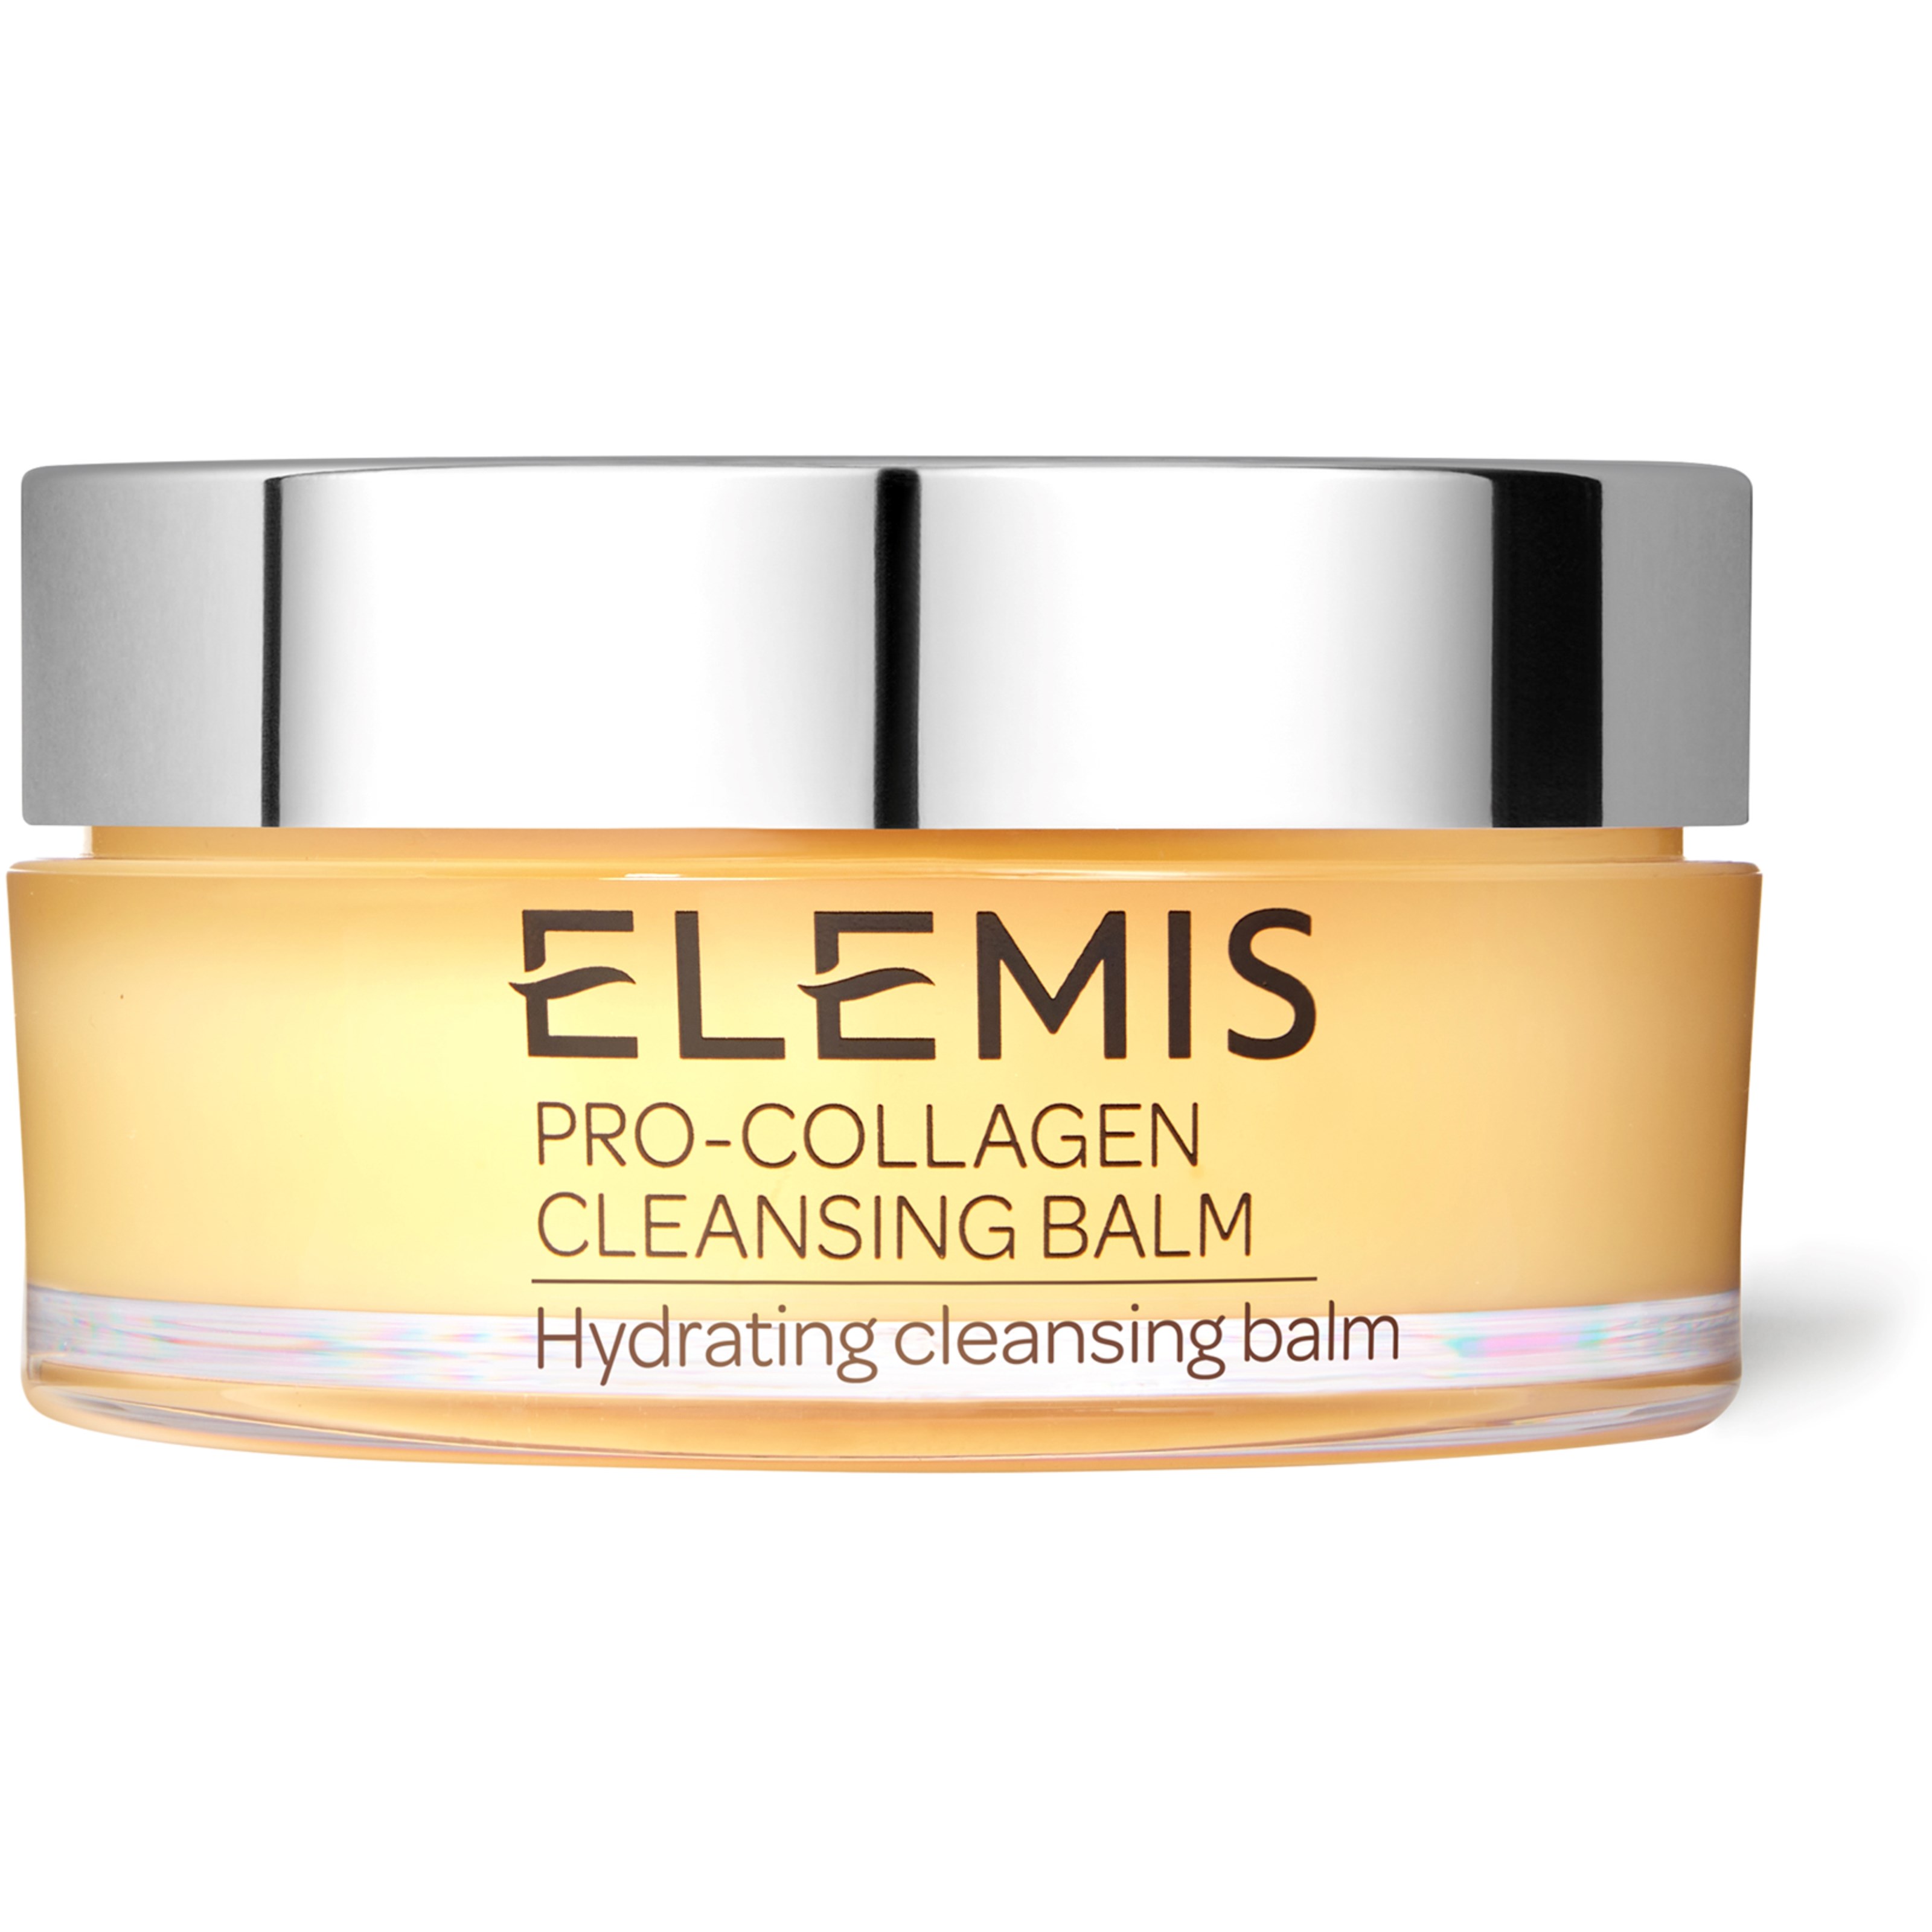 Bilde av Elemis Pro-collagen Cleansing Balm 105 G